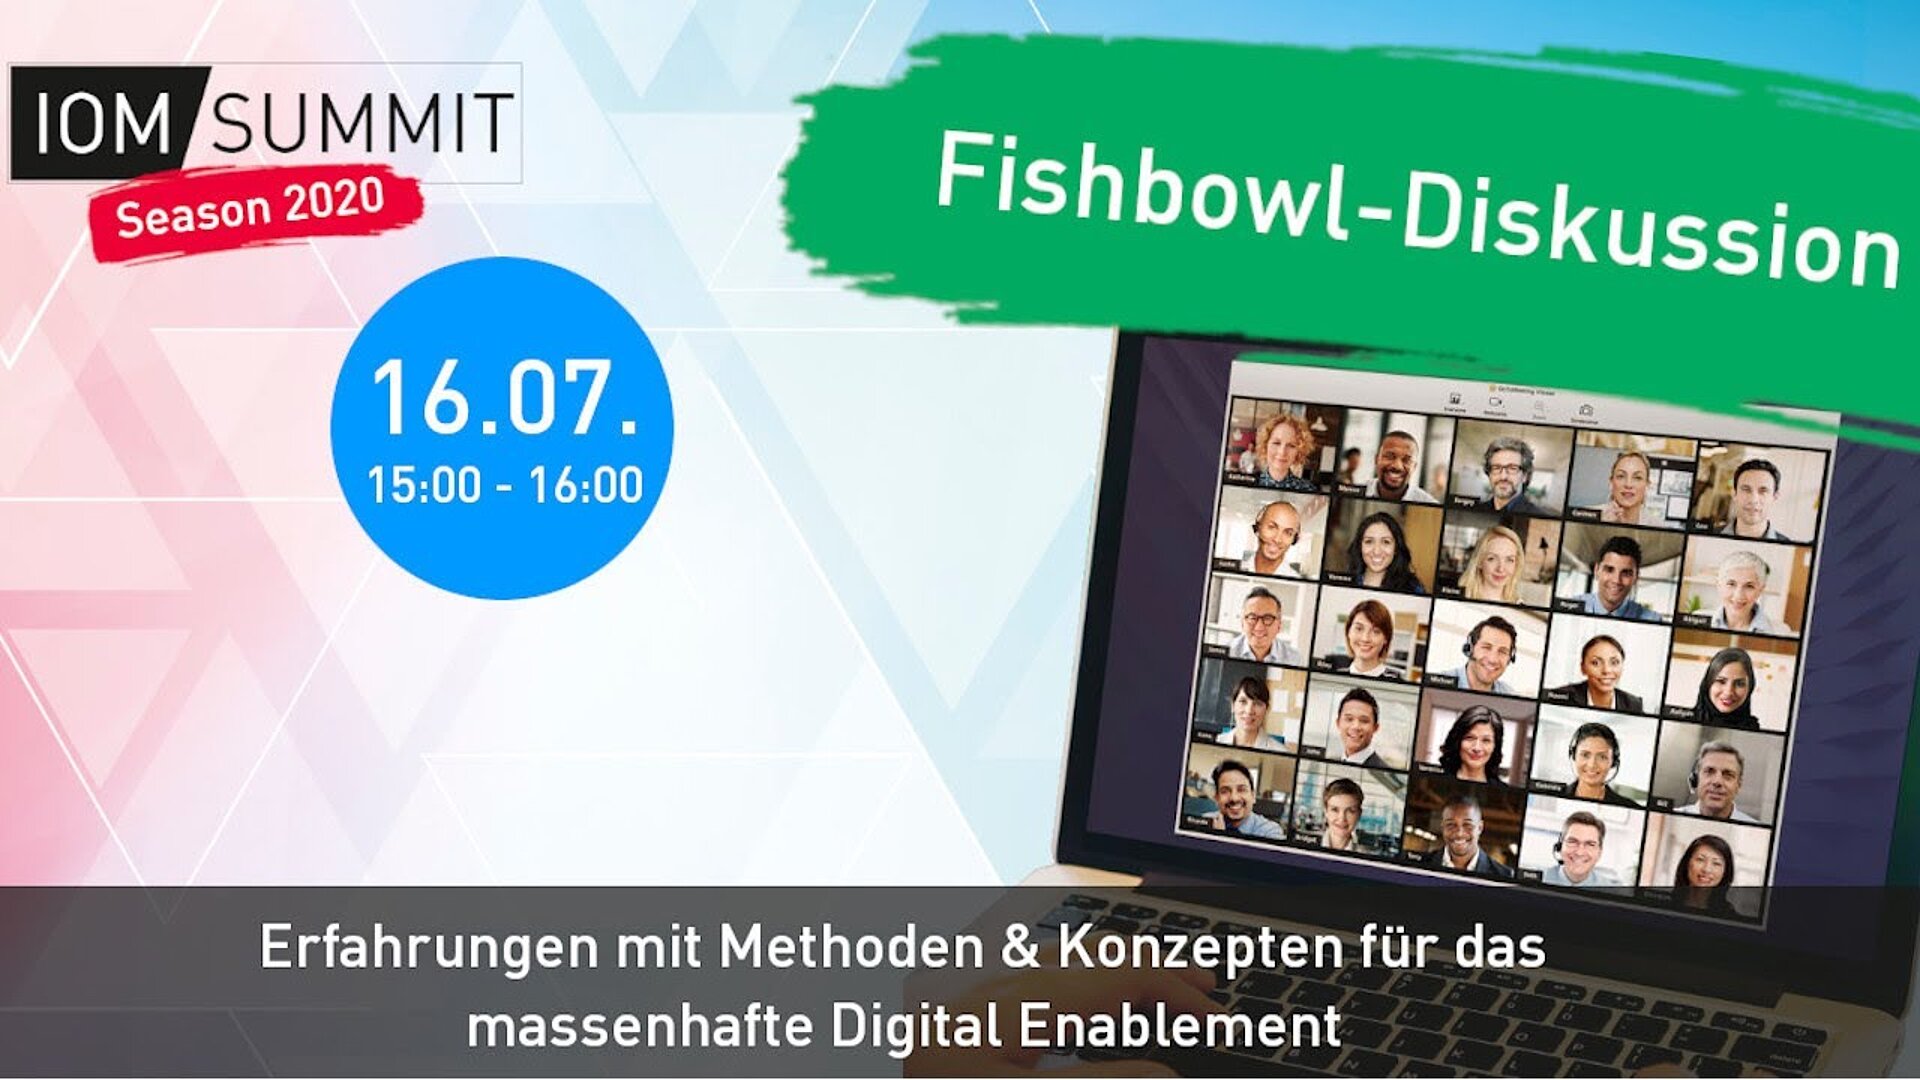 Fishbowl-Diskussion: Erfahrungen mit Methoden & Konzepten für das massenhafte Digital Enablement